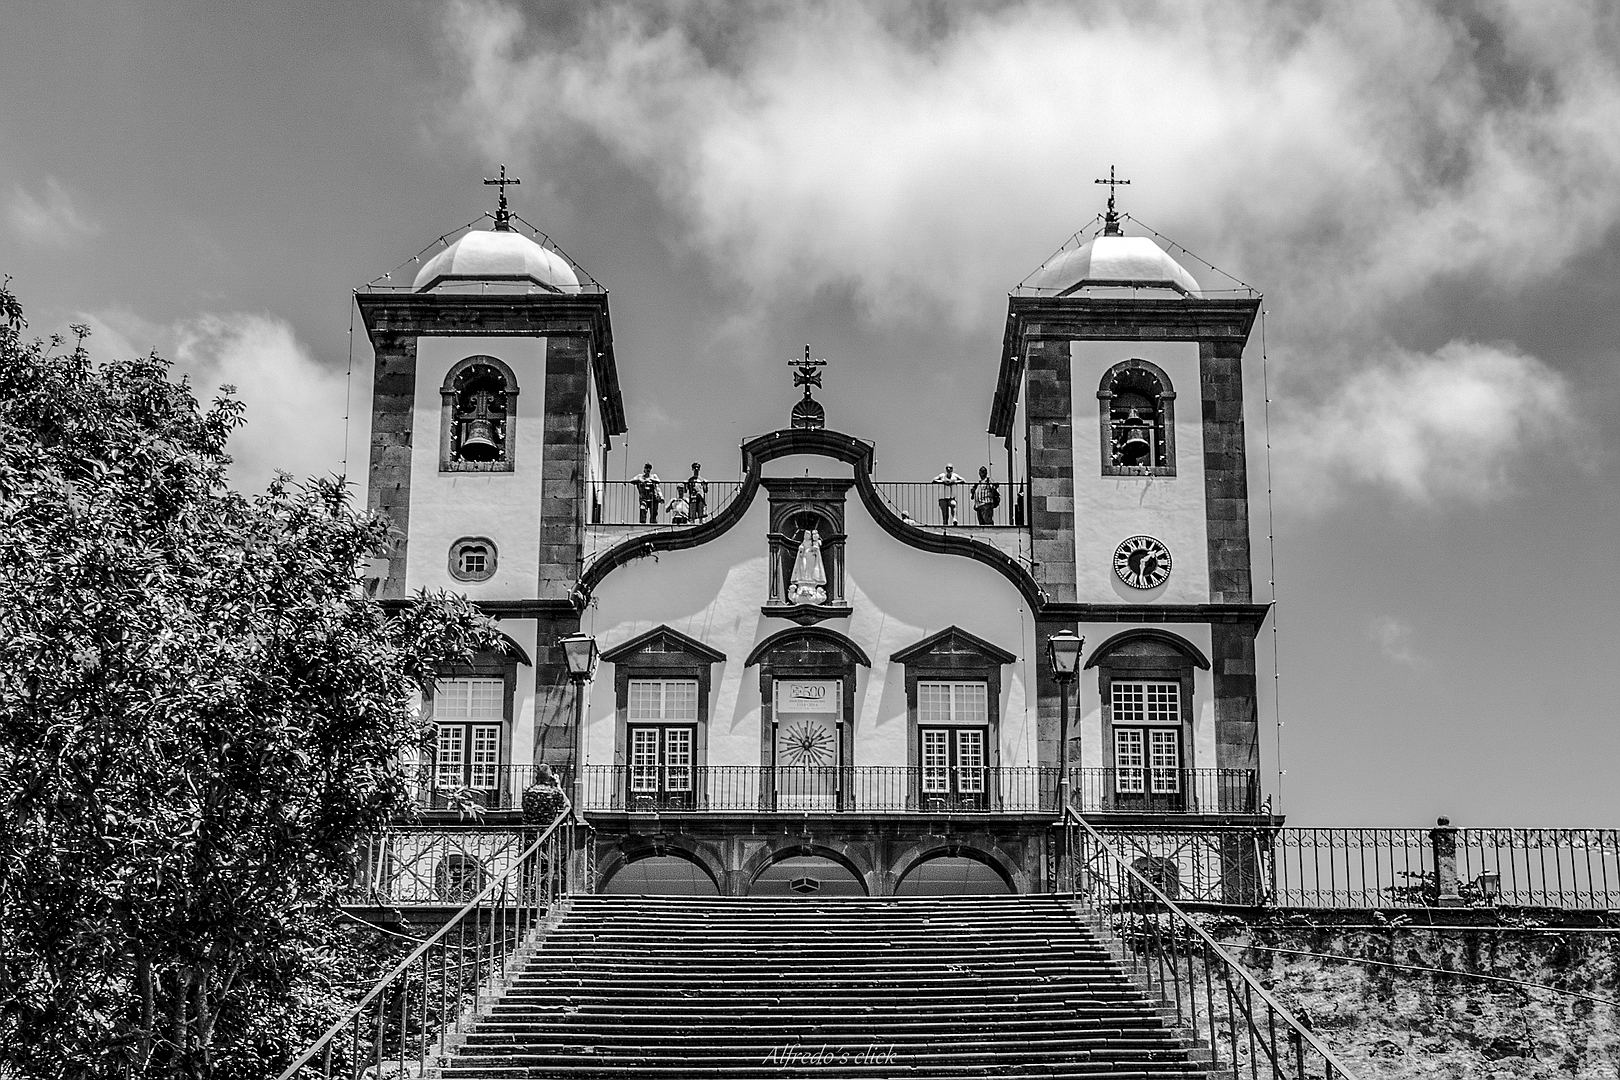 Nossa Senhora do Monte ist eine katholische Wallfahrtskirche in Monte auf Madeira.